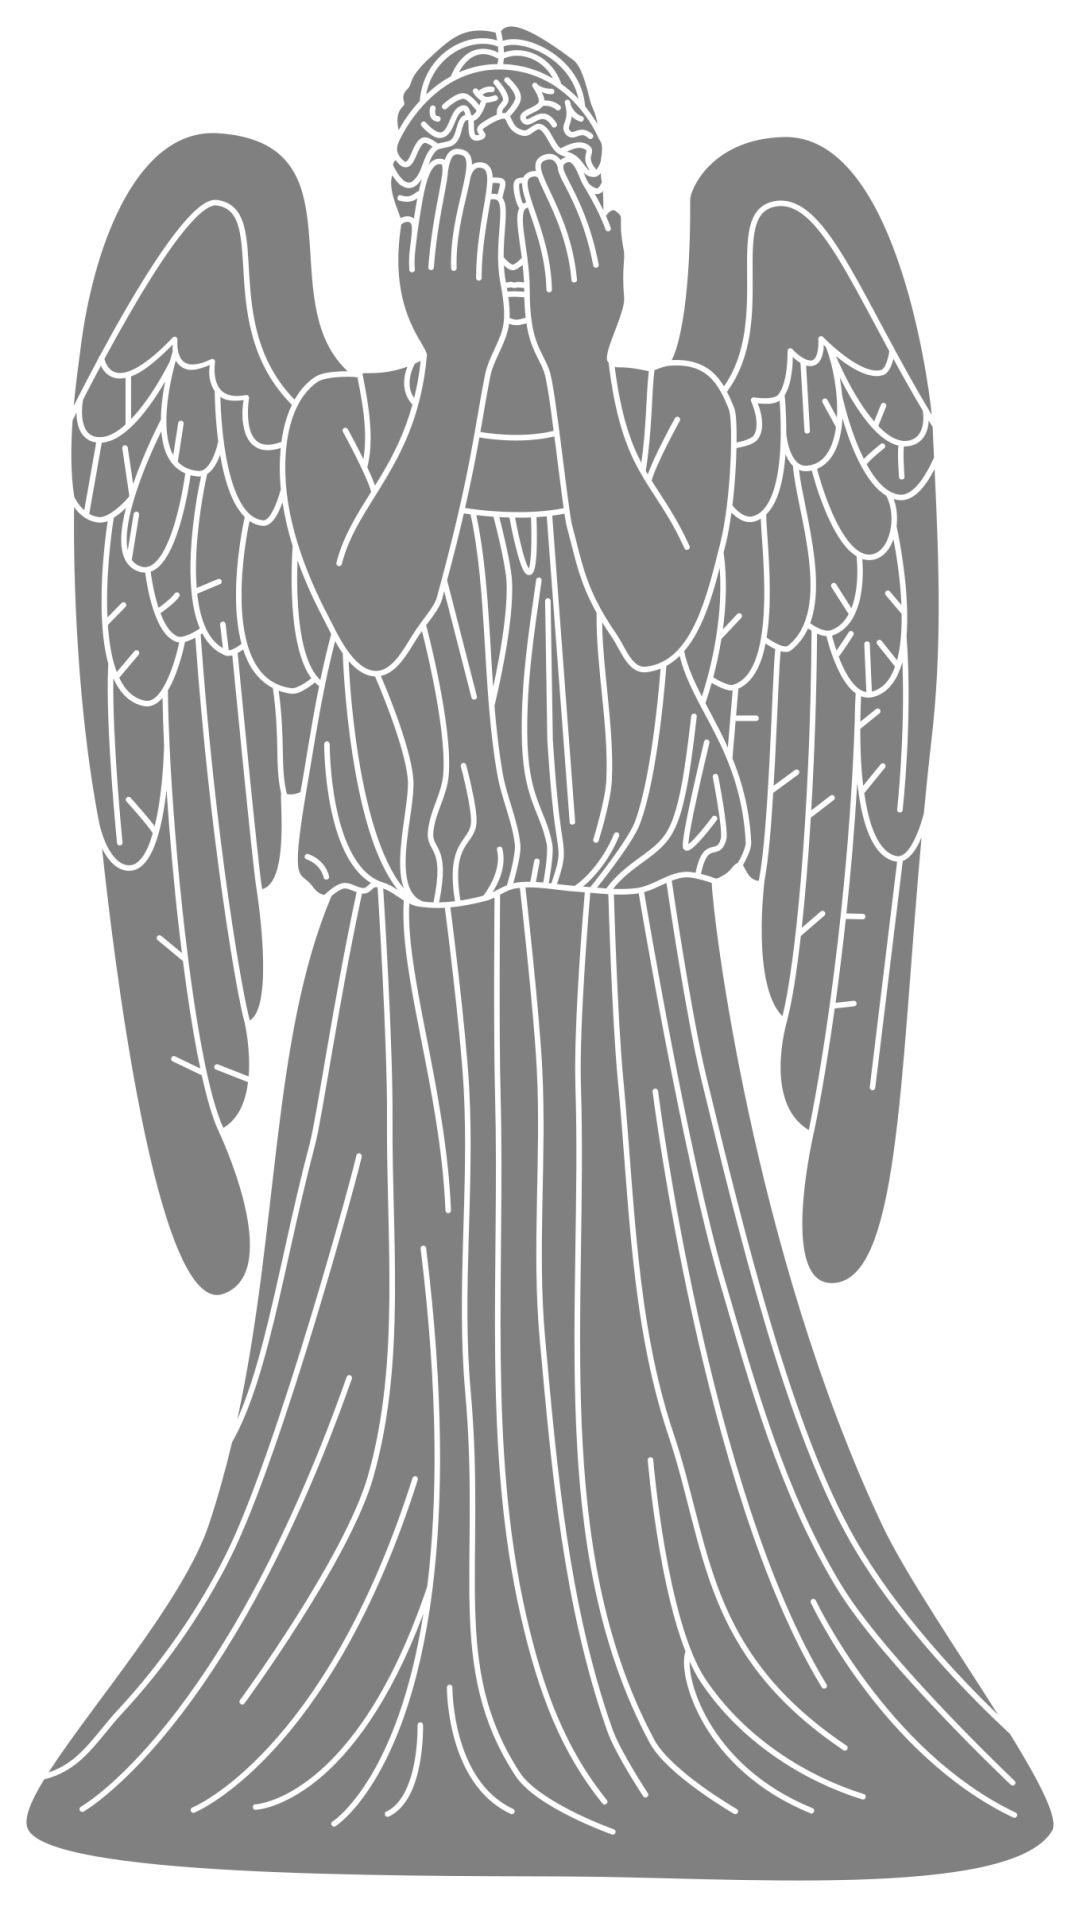 哭泣的天使古老雕塑反对蓝天的 库存图片. 图片 包括有 啼声, 艺术, 青苔, 技艺家, 女性, 艺术性 - 85359907